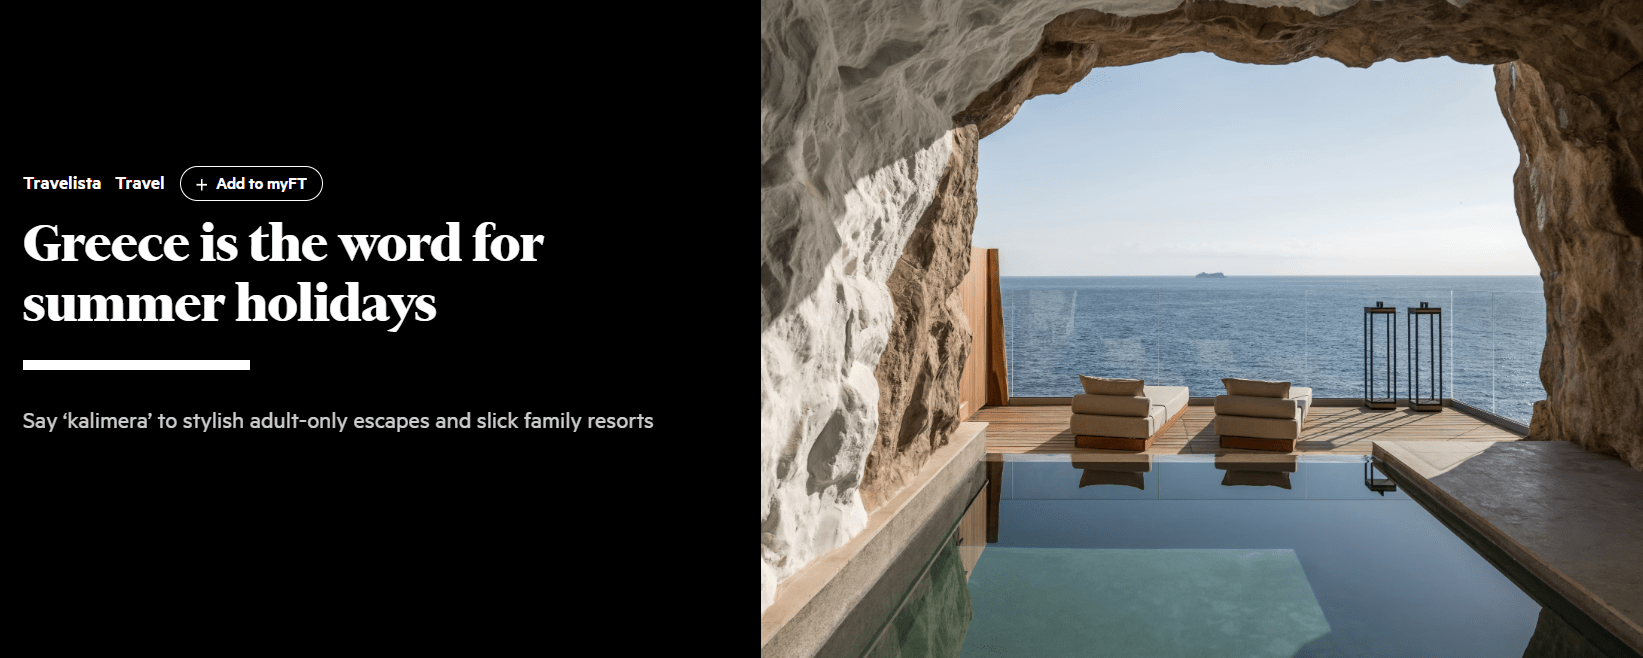 Ύμνος στην Ελλάδα από τους Financial Times για τις καλοκαιρινές διακοπές